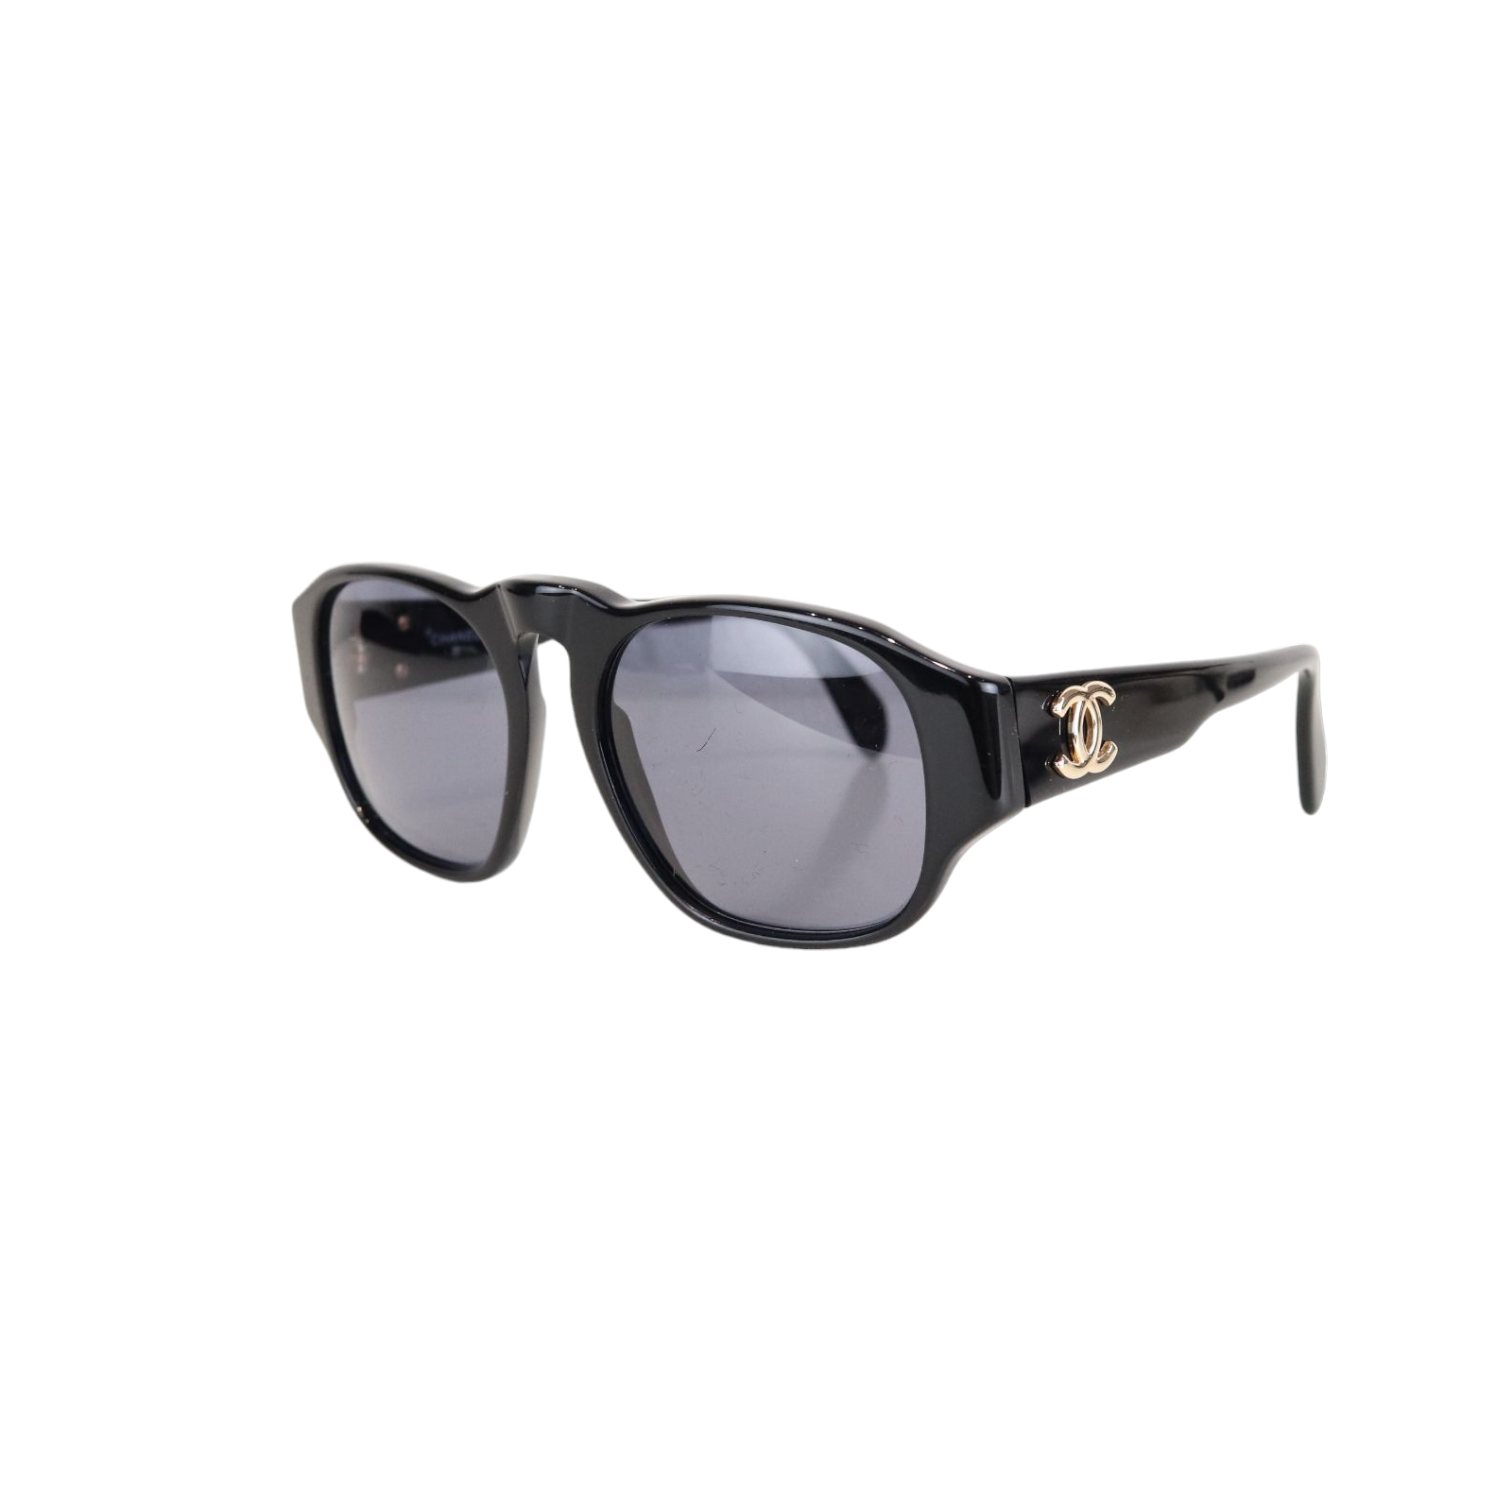 Vintage Chanel Shield Sunglasses. In good vintage - Depop